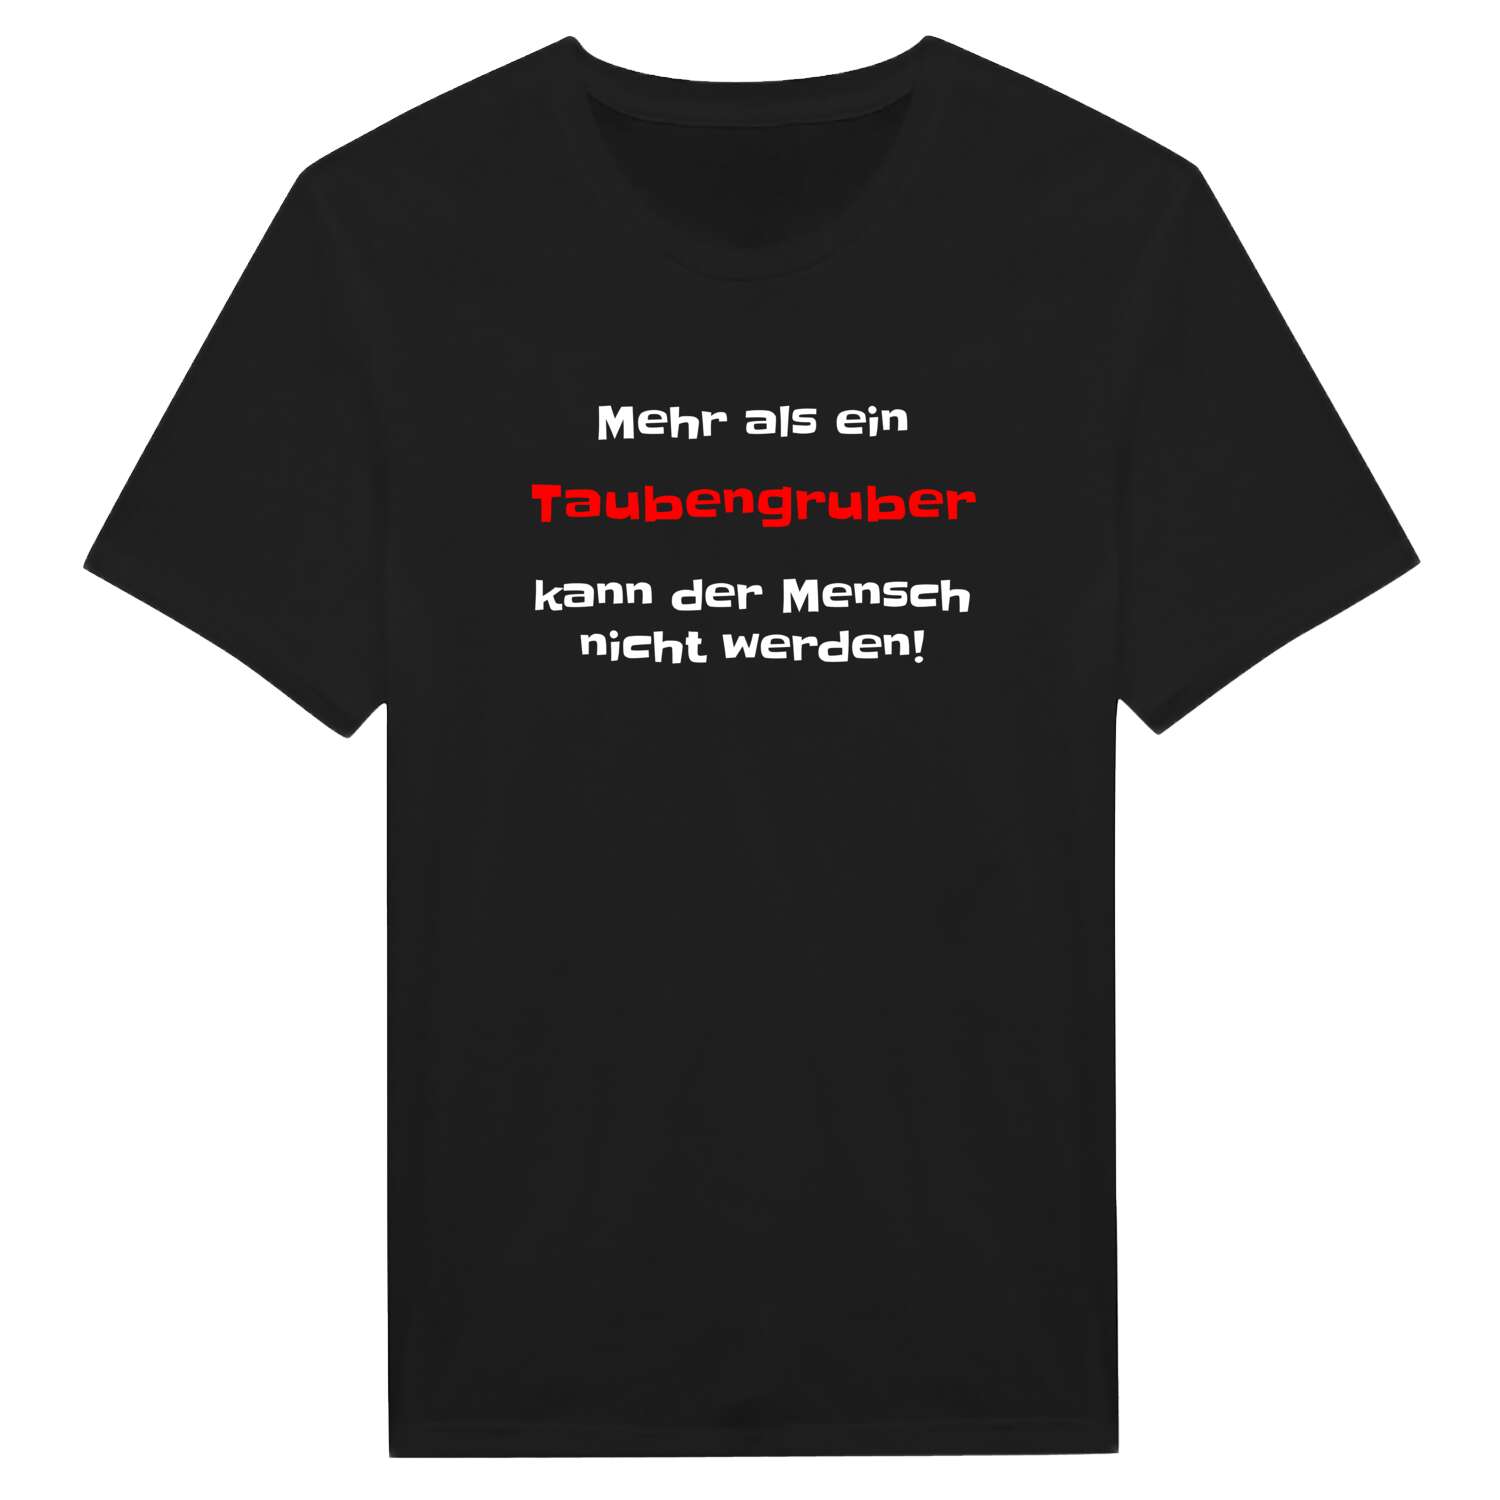 Taubengrub T-Shirt »Mehr als ein«